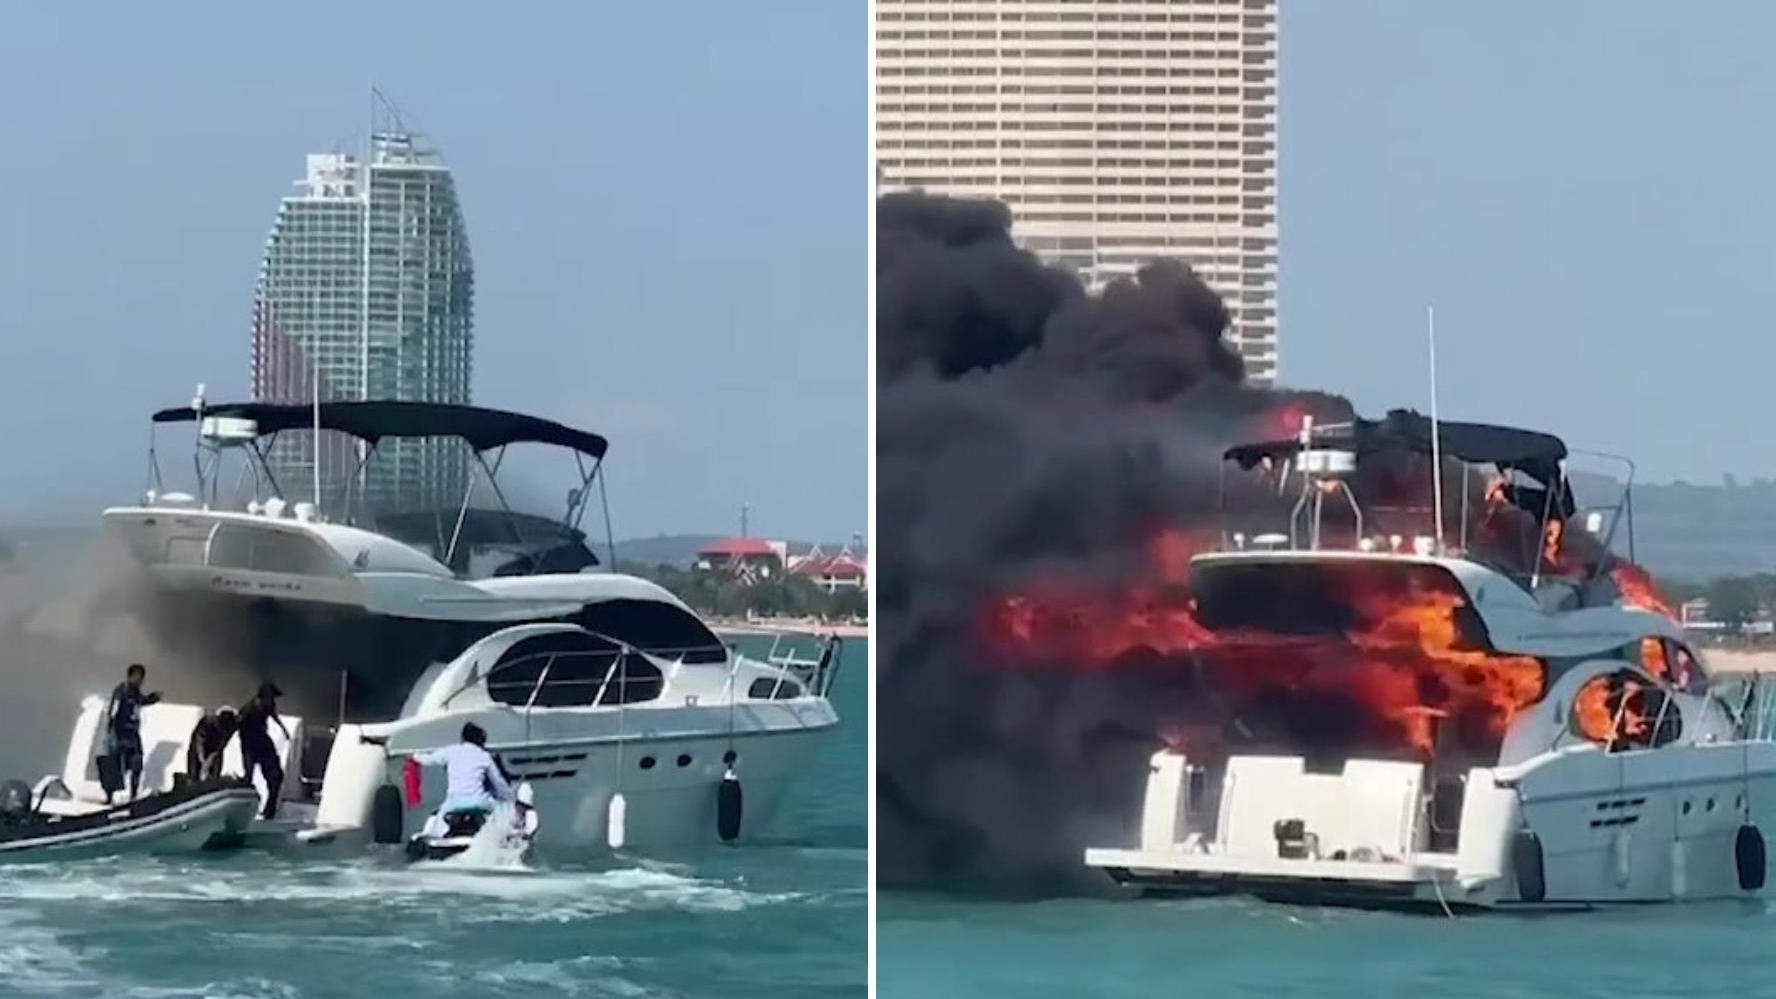 Lo yacht di lusso ha preso fuoco poco dopo la riparazione!